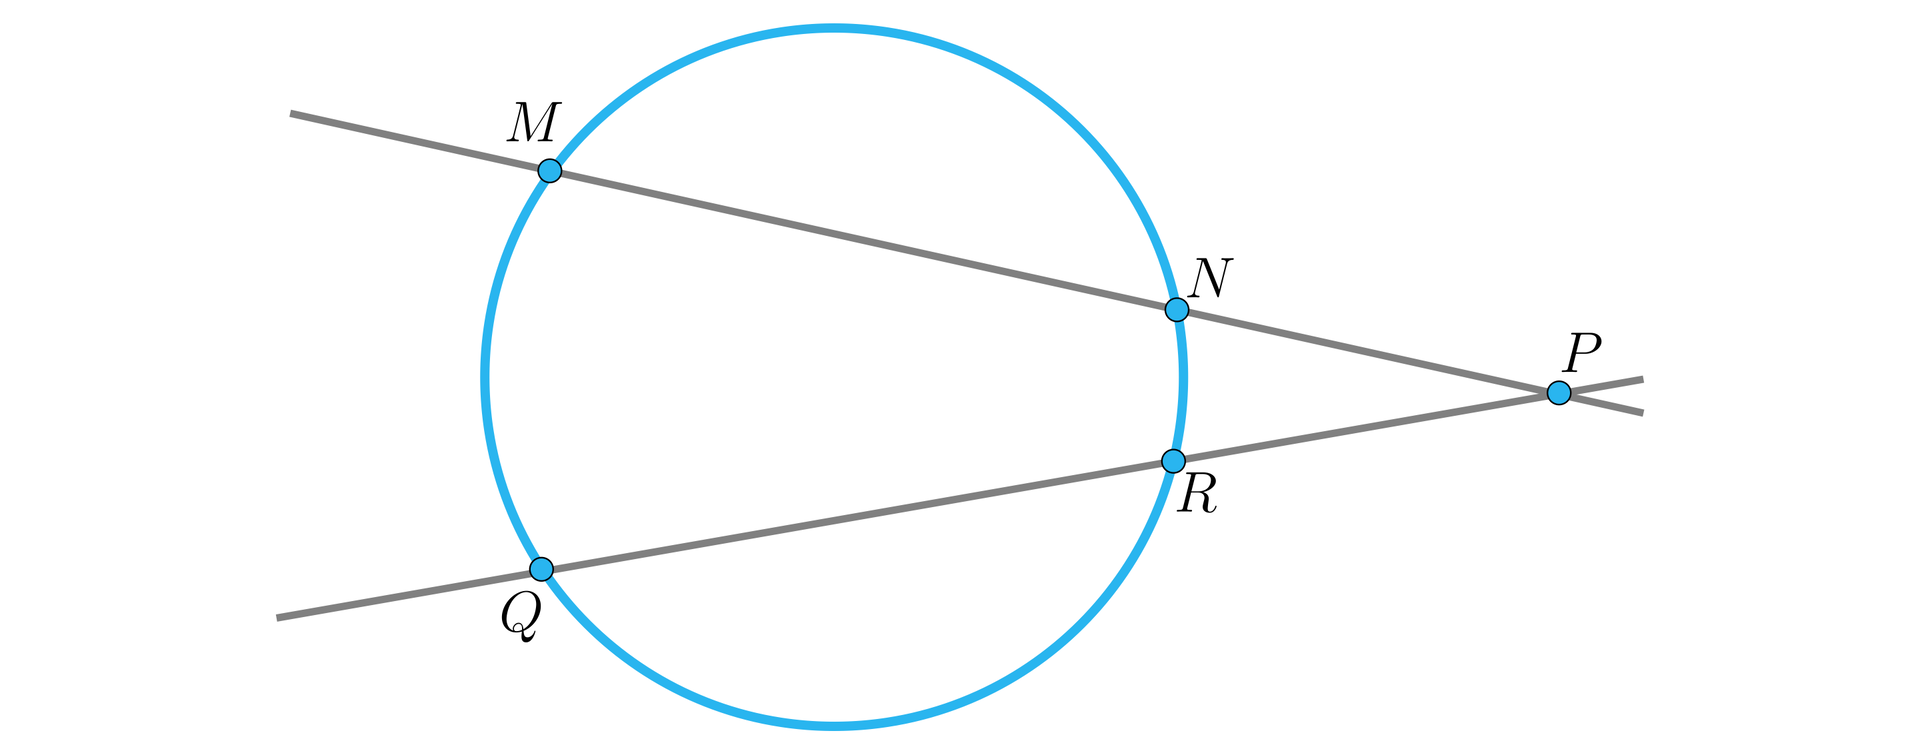 Na ilustracji przedstawiono okrąg. Poprowadzono dwie proste. Pierwsza prosta przecina okrąg w punkcie M i N. Druga prosta przecina okrąg w punkcie Q i R. Proste przecinają się w punkcie P.